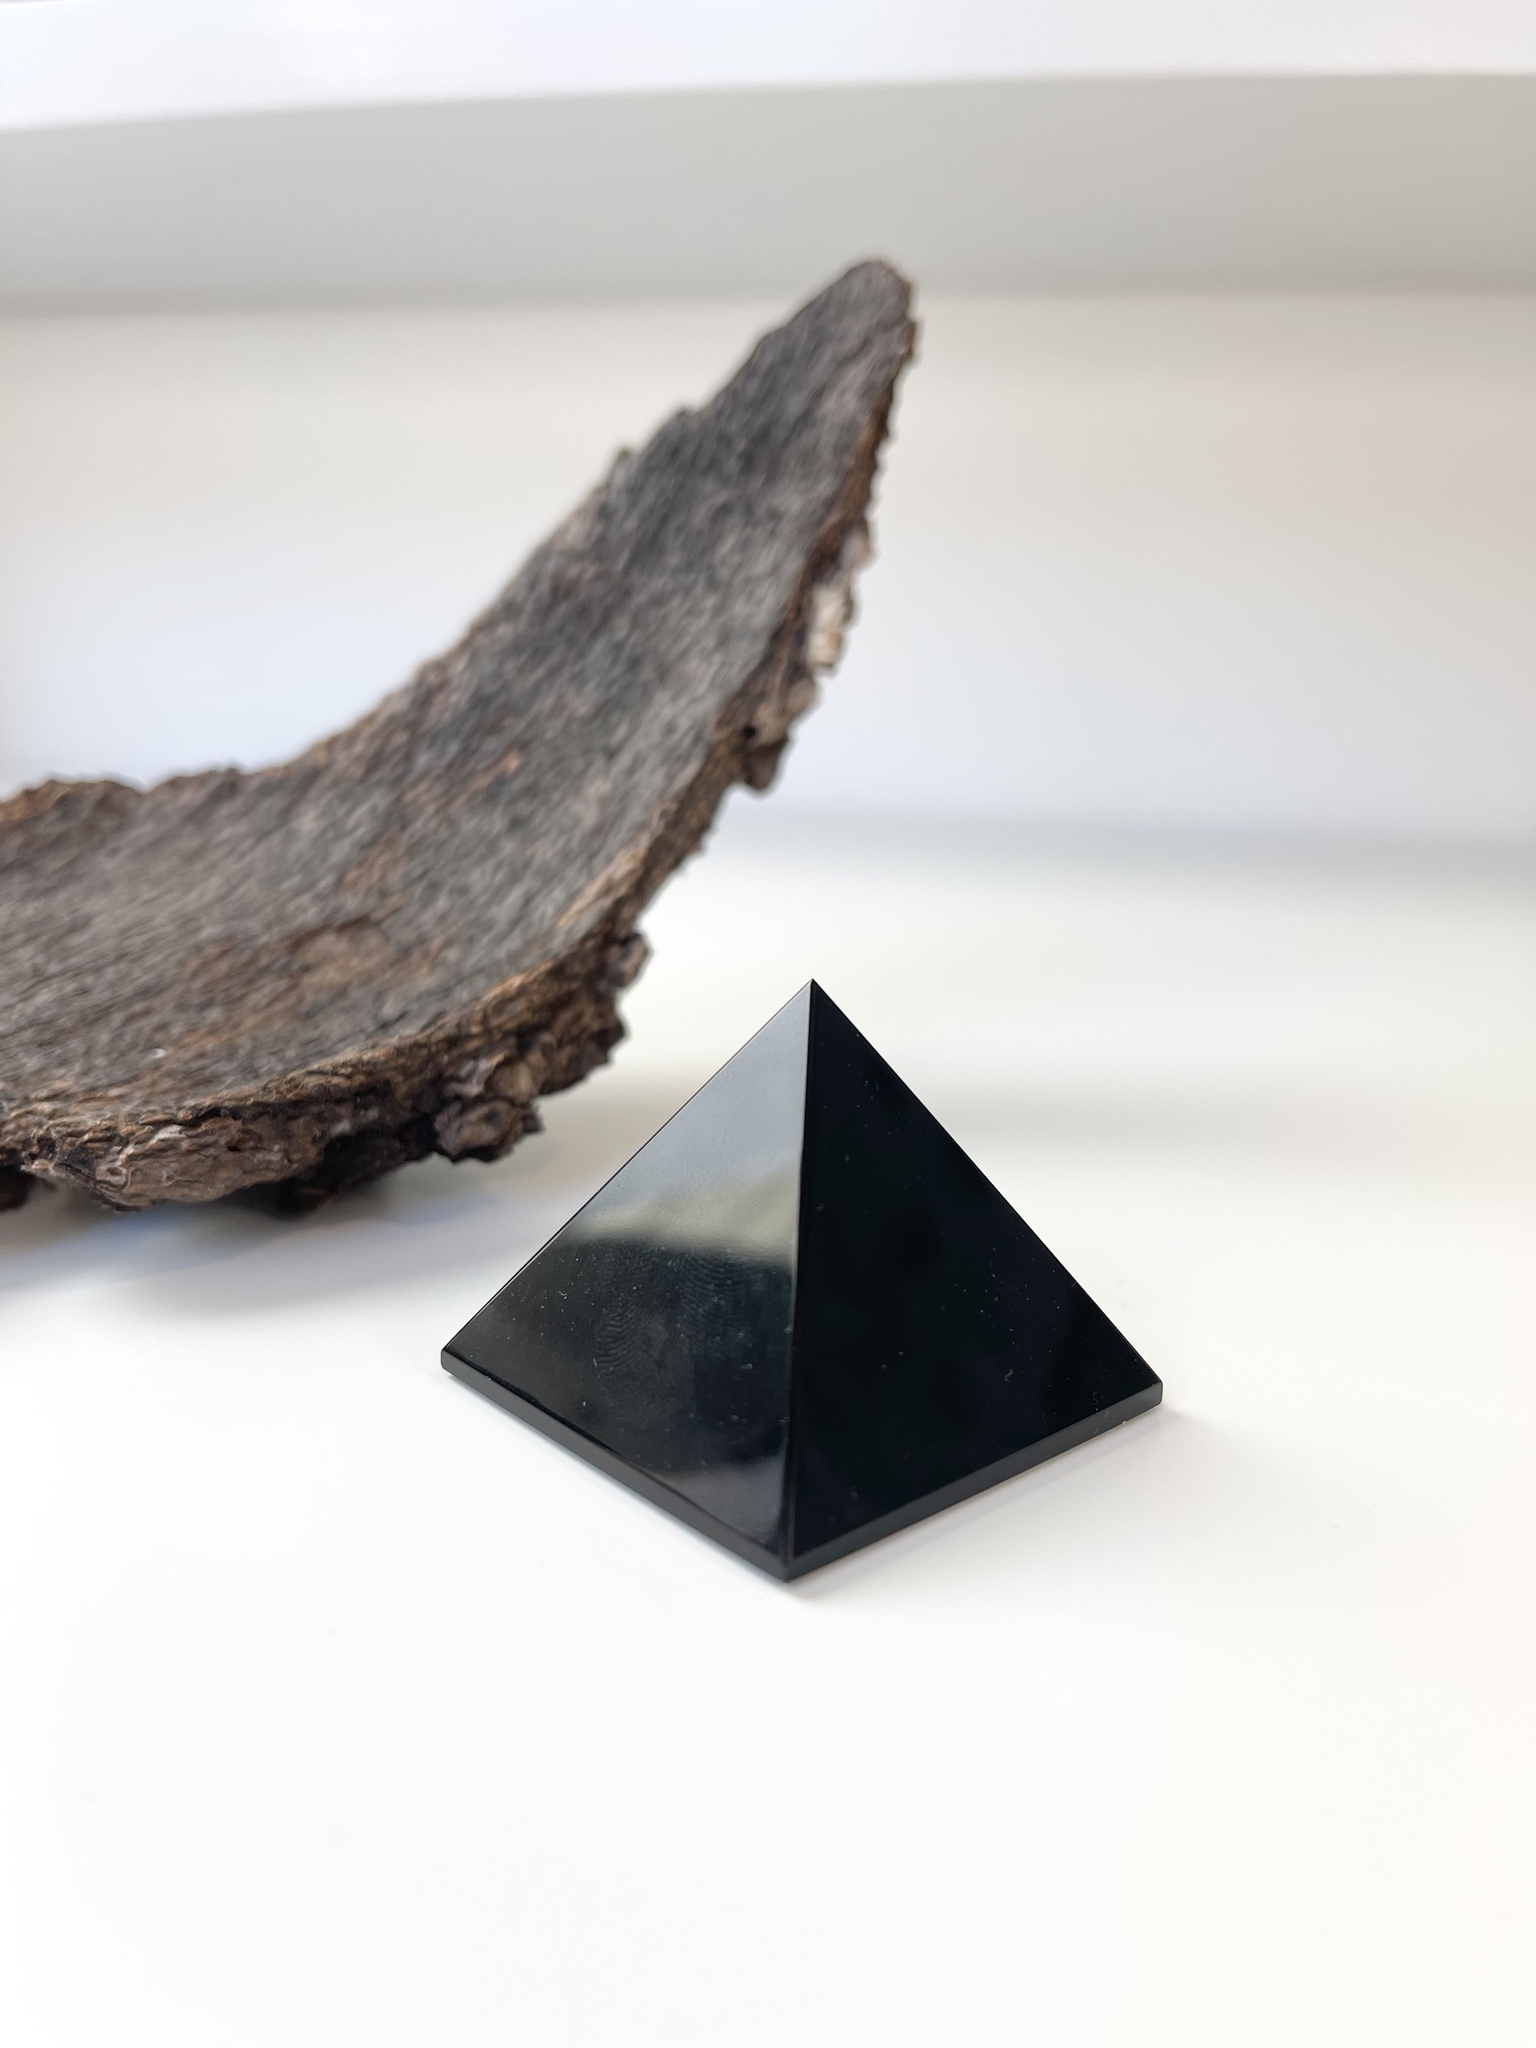 Obsidian, pyramid